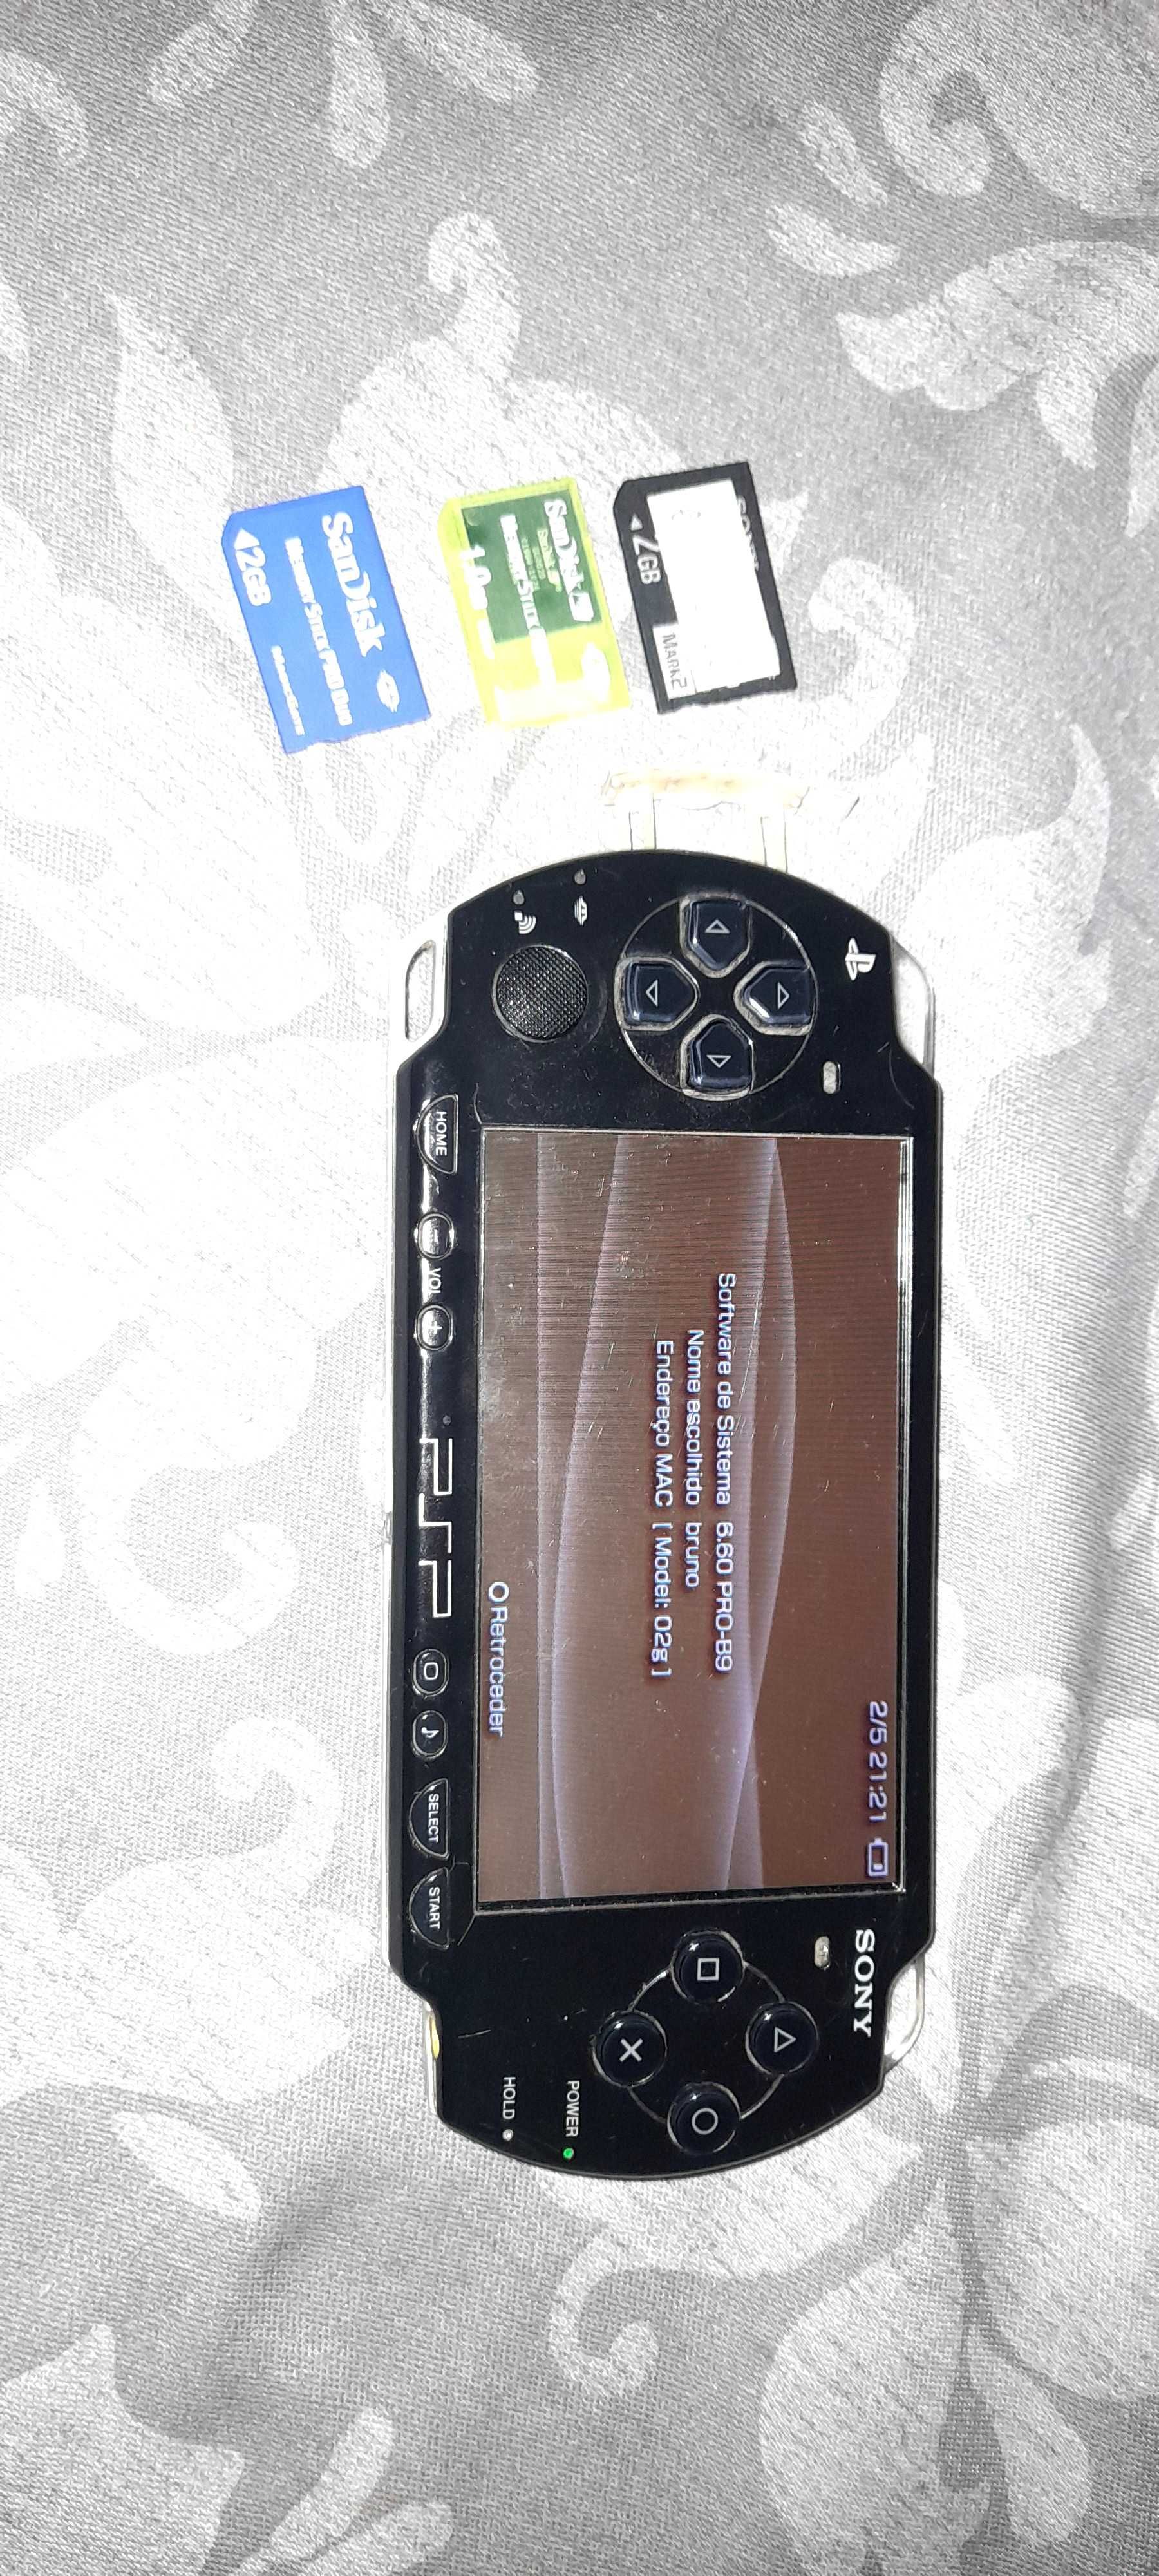 SONY PSP 2000 desbloqueado com 3 cartões de memoria